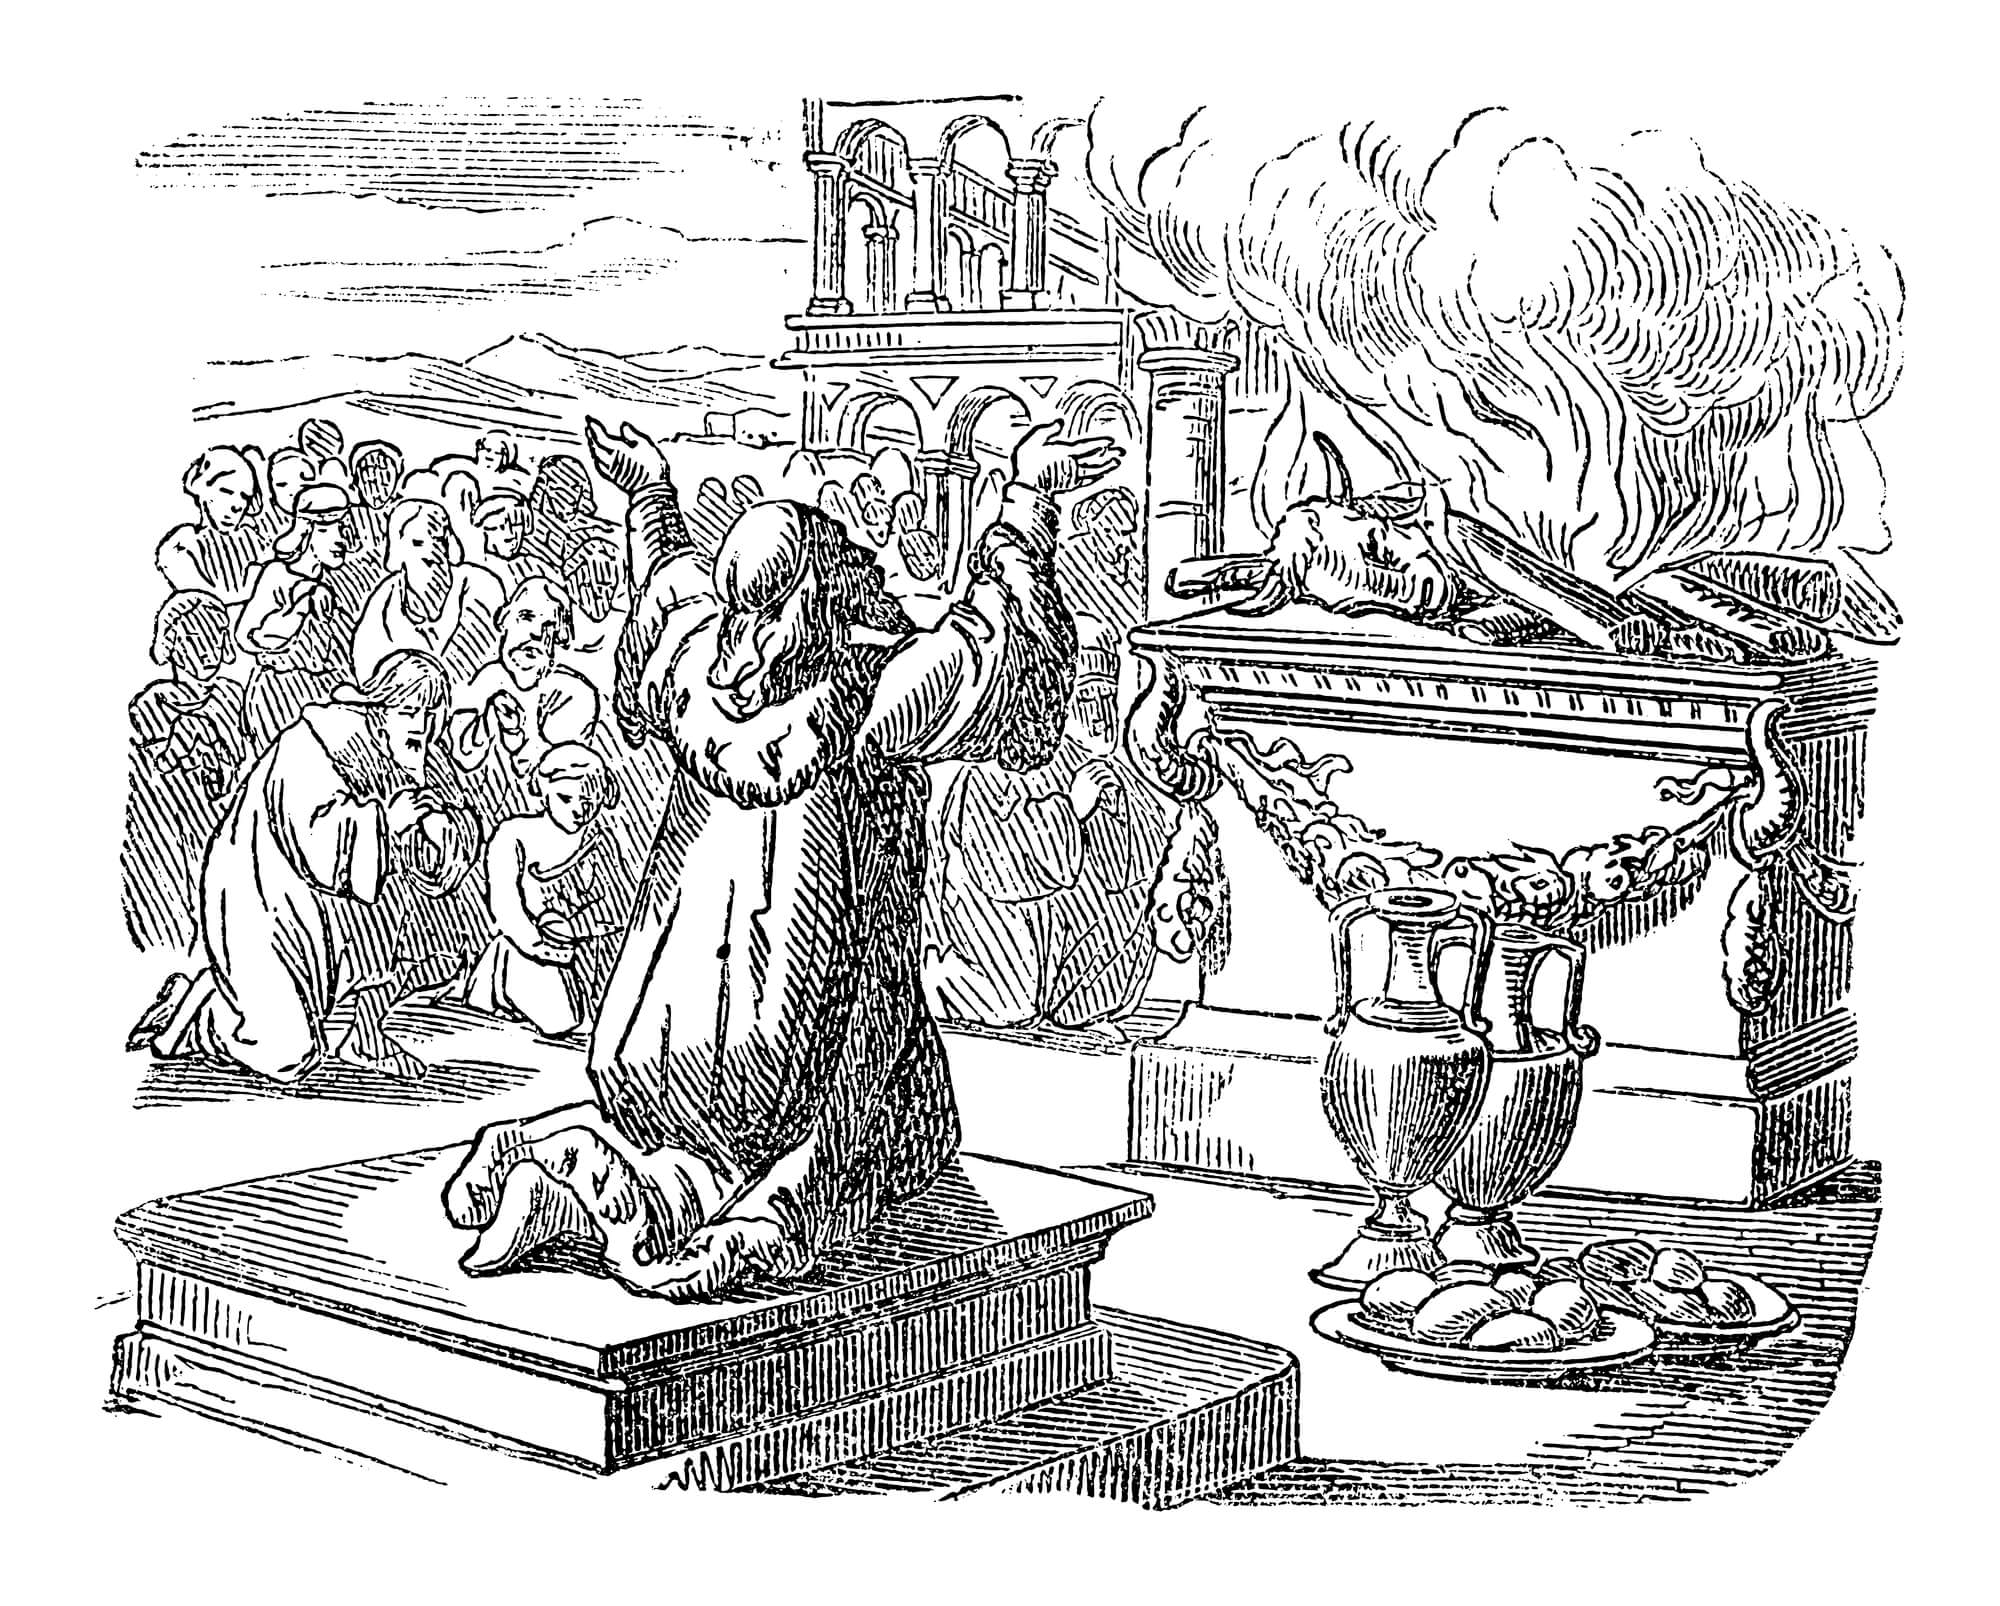 איור המתאר את שלמה המלך מקריב את הקורבן הראשון בבית המקדש.  <a href="https://depositphotos.com. ">המחשה: depositphotos.com</a>